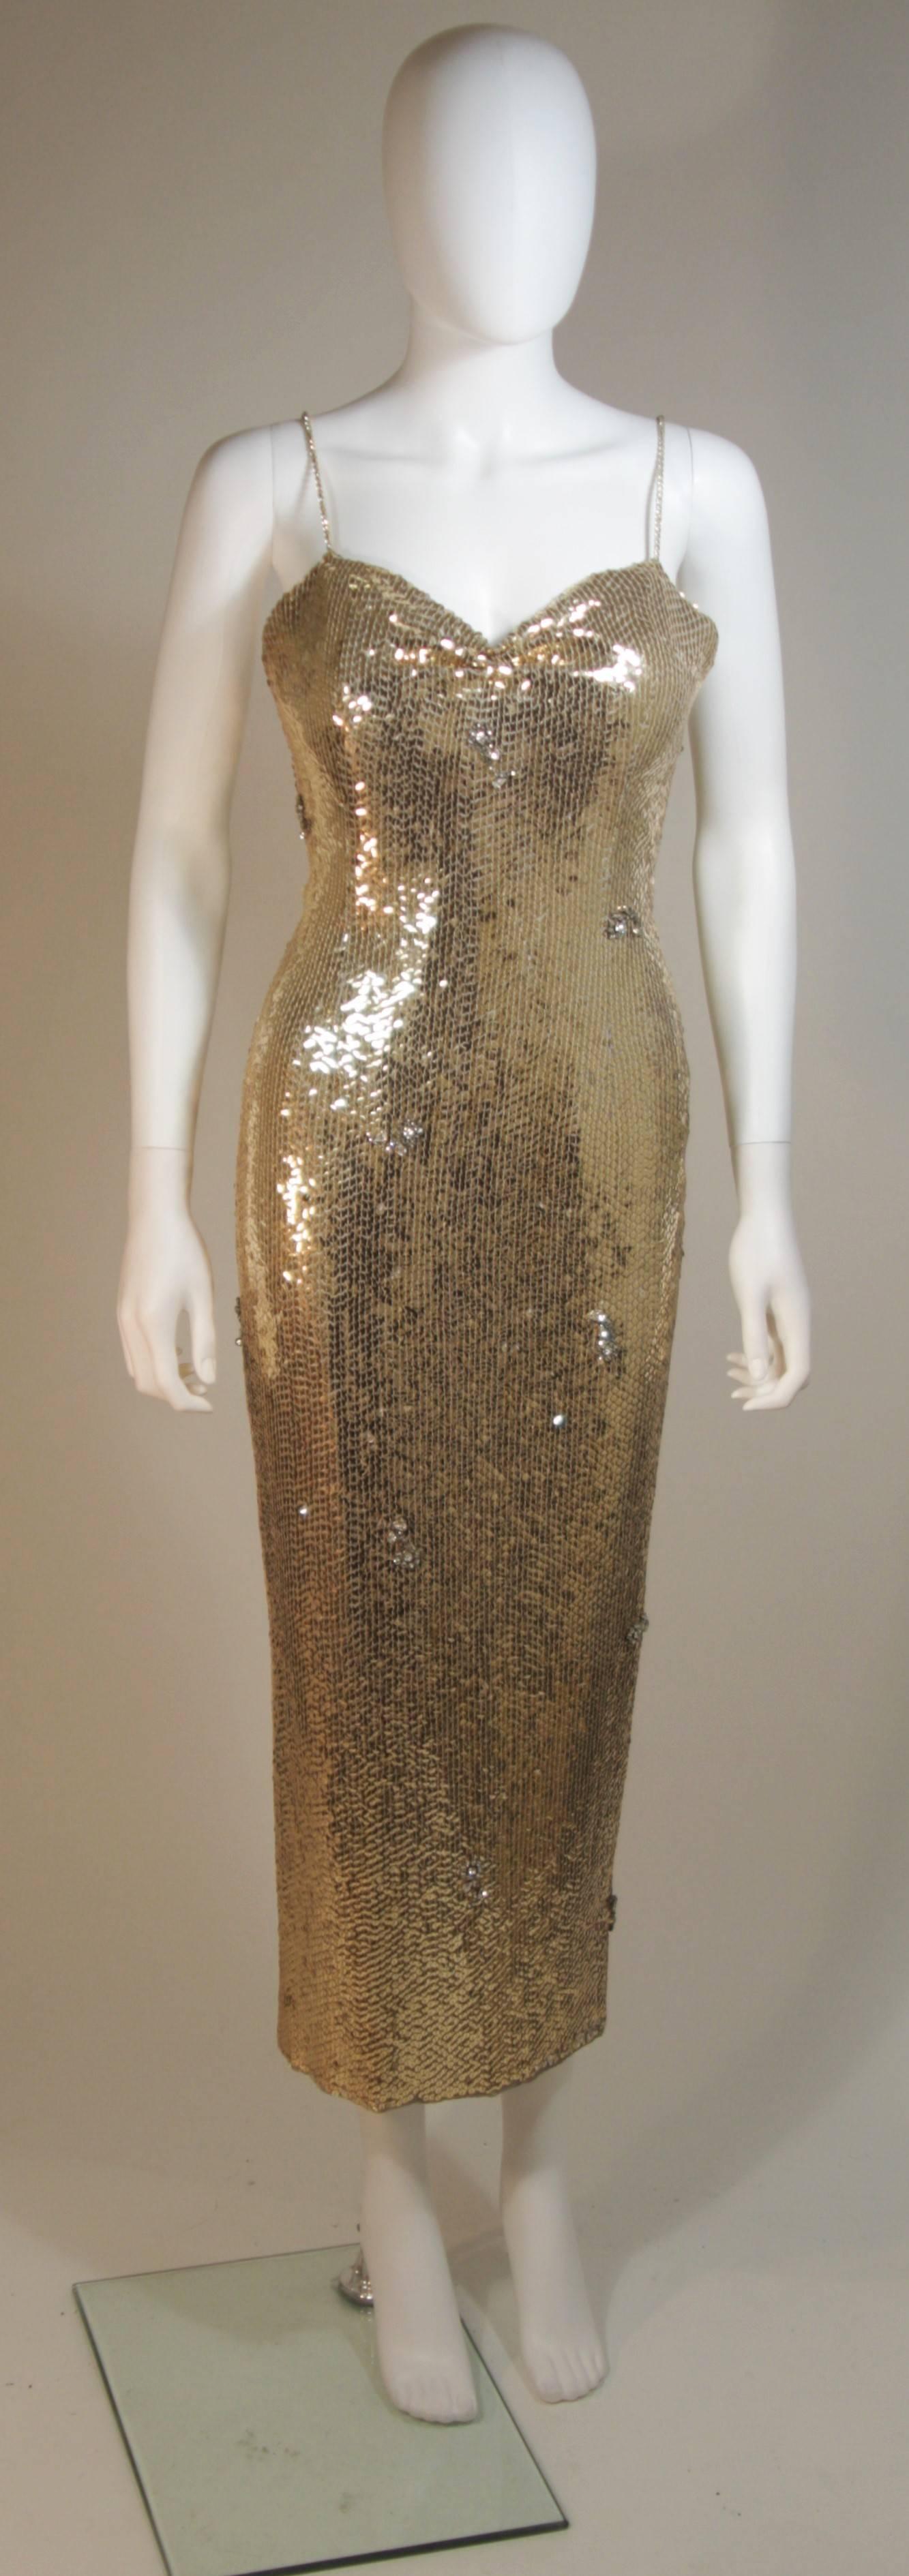 Dieses ELIZABETH MASON COUTURE  kleid ist ursprünglich aus den 1960er Jahren, aber ich  mit meinem Designteam neu interpretiert, um ihm ein sexieres, moderneres Flair zu verleihen. 
Es besteht aus einem goldenen Paillettenstoff mit verstreuten